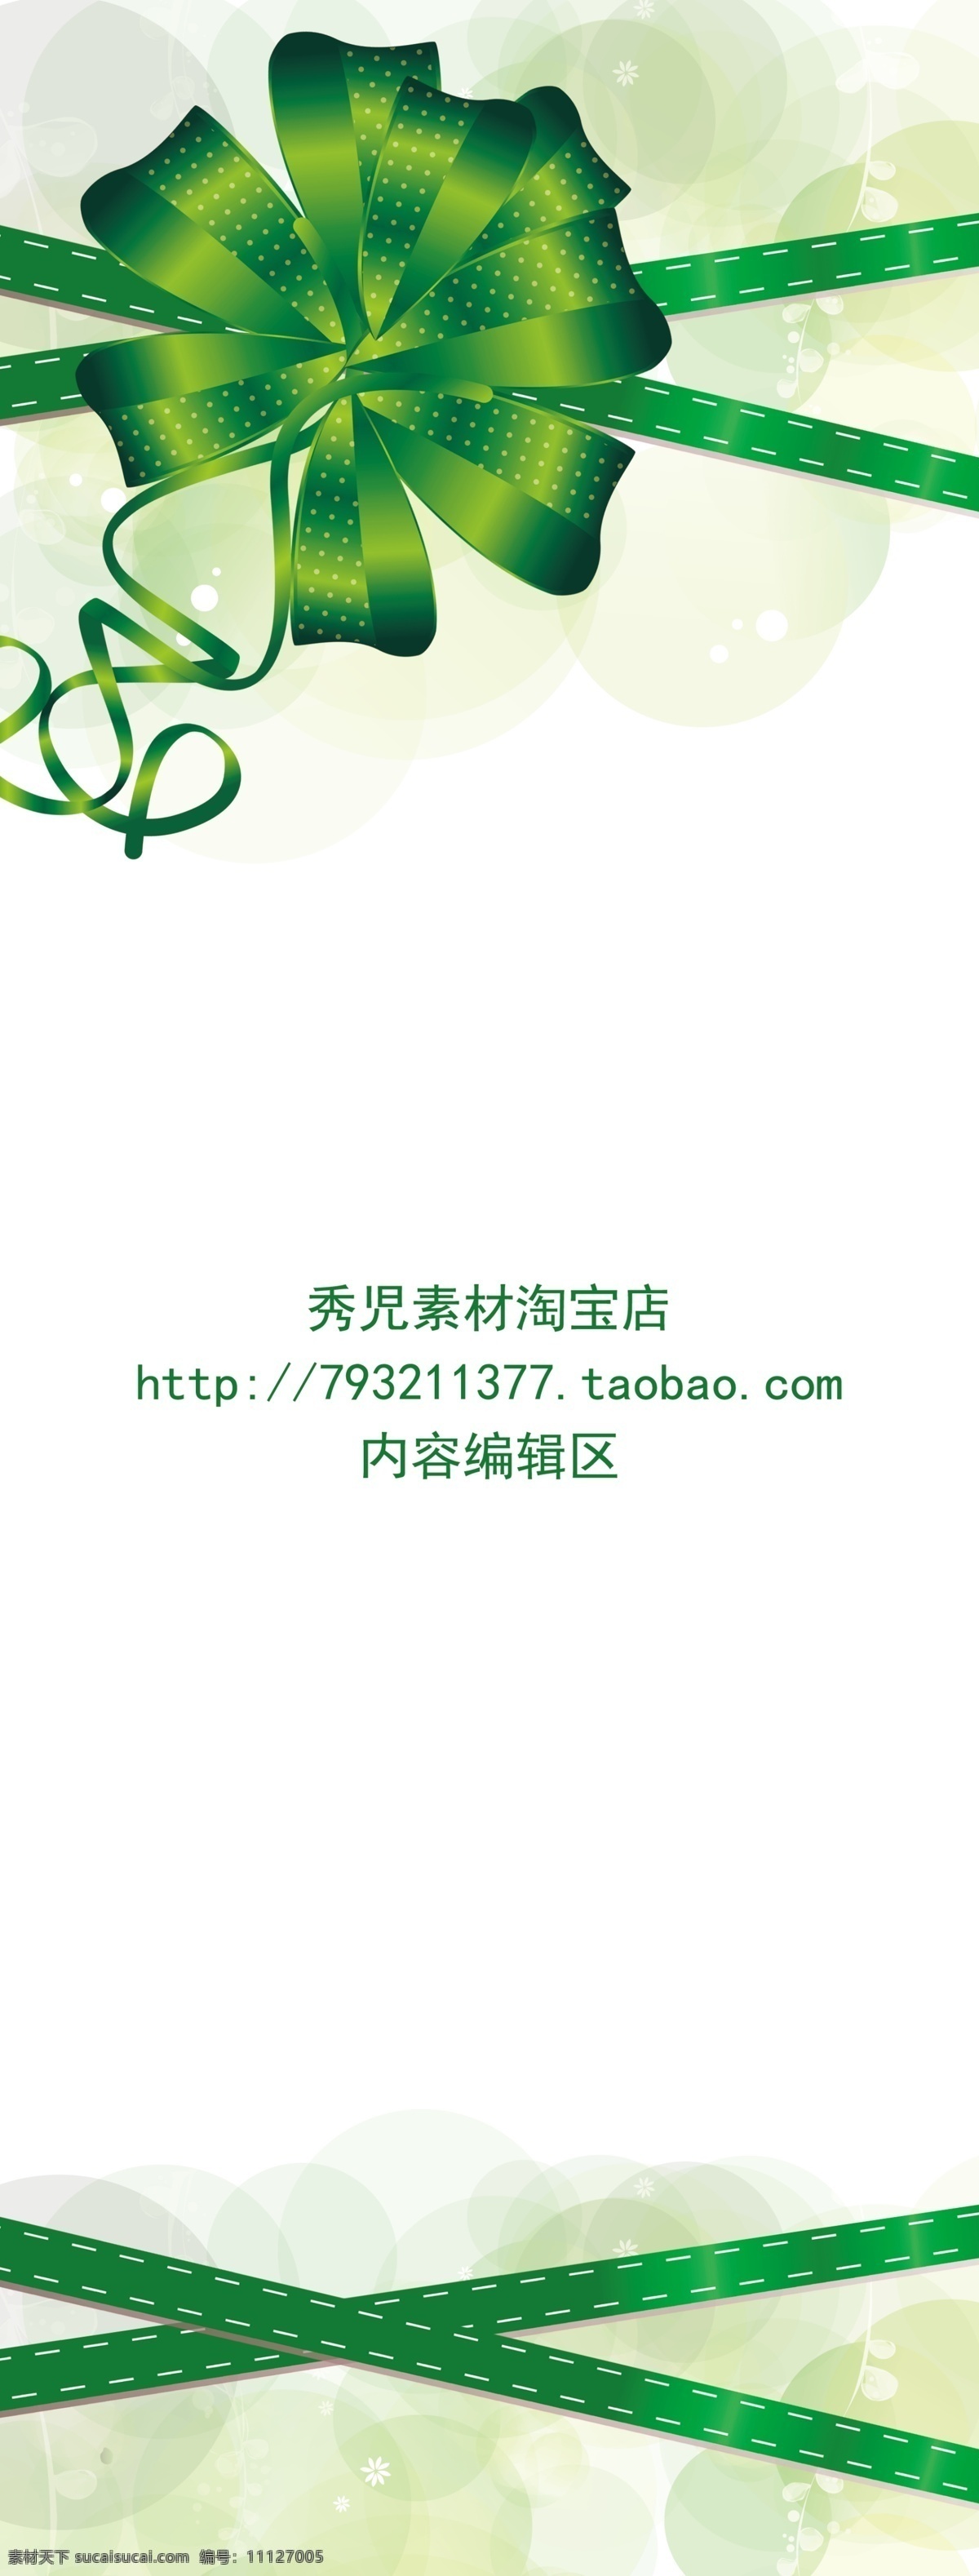 绿色 中国结 展架 模板 画面 绿色画面 绿色中国结 绿色素材 展架素材 精美展架 展架海报 海报素材 精美 海报 展架素材设计 展架模板 白色